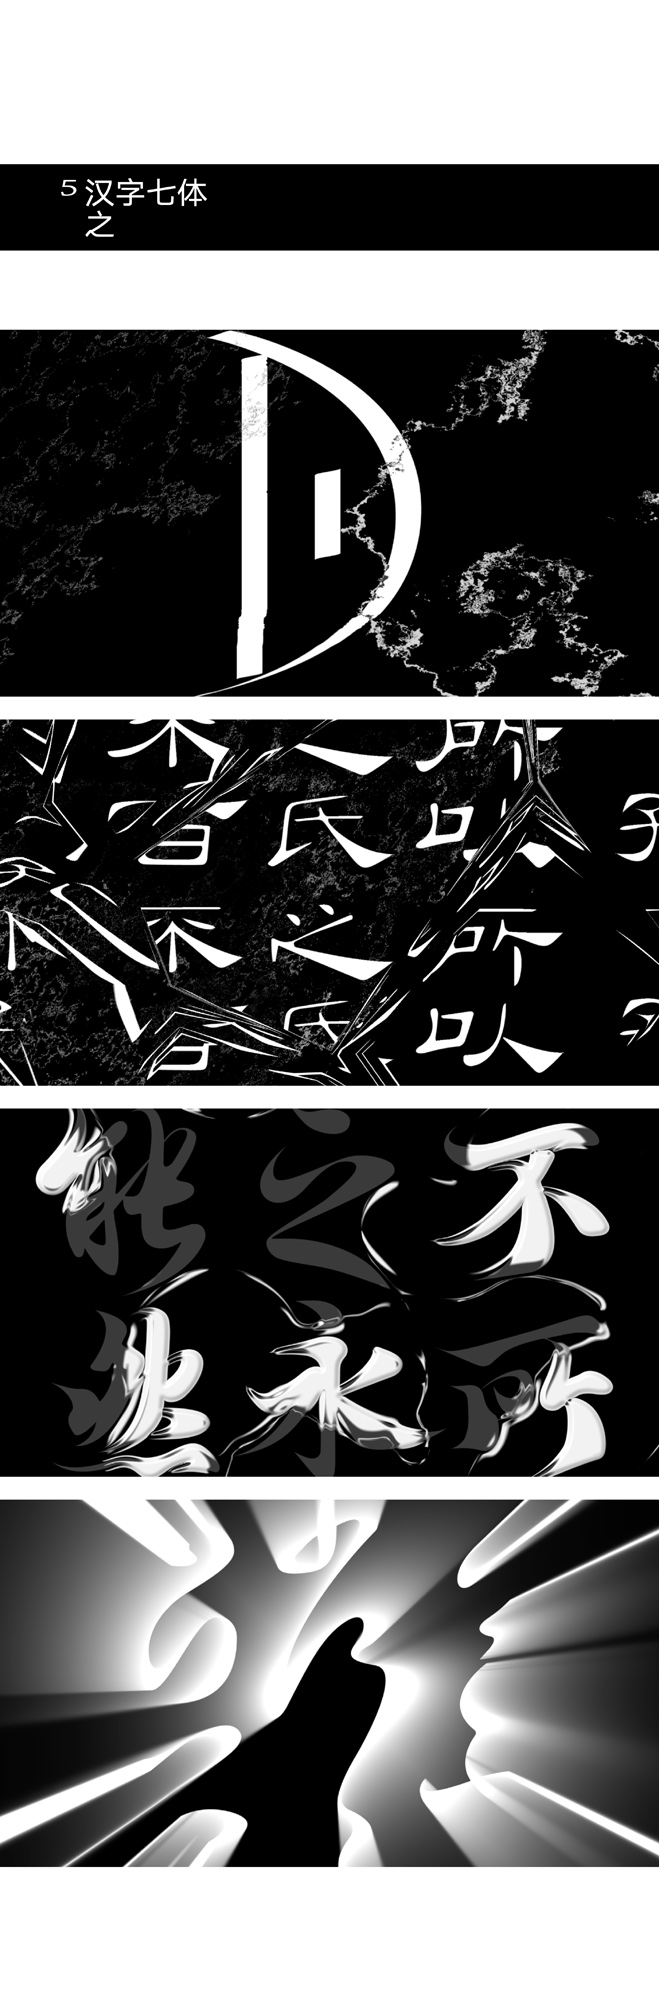 《汉字七体动态化字体设计》4